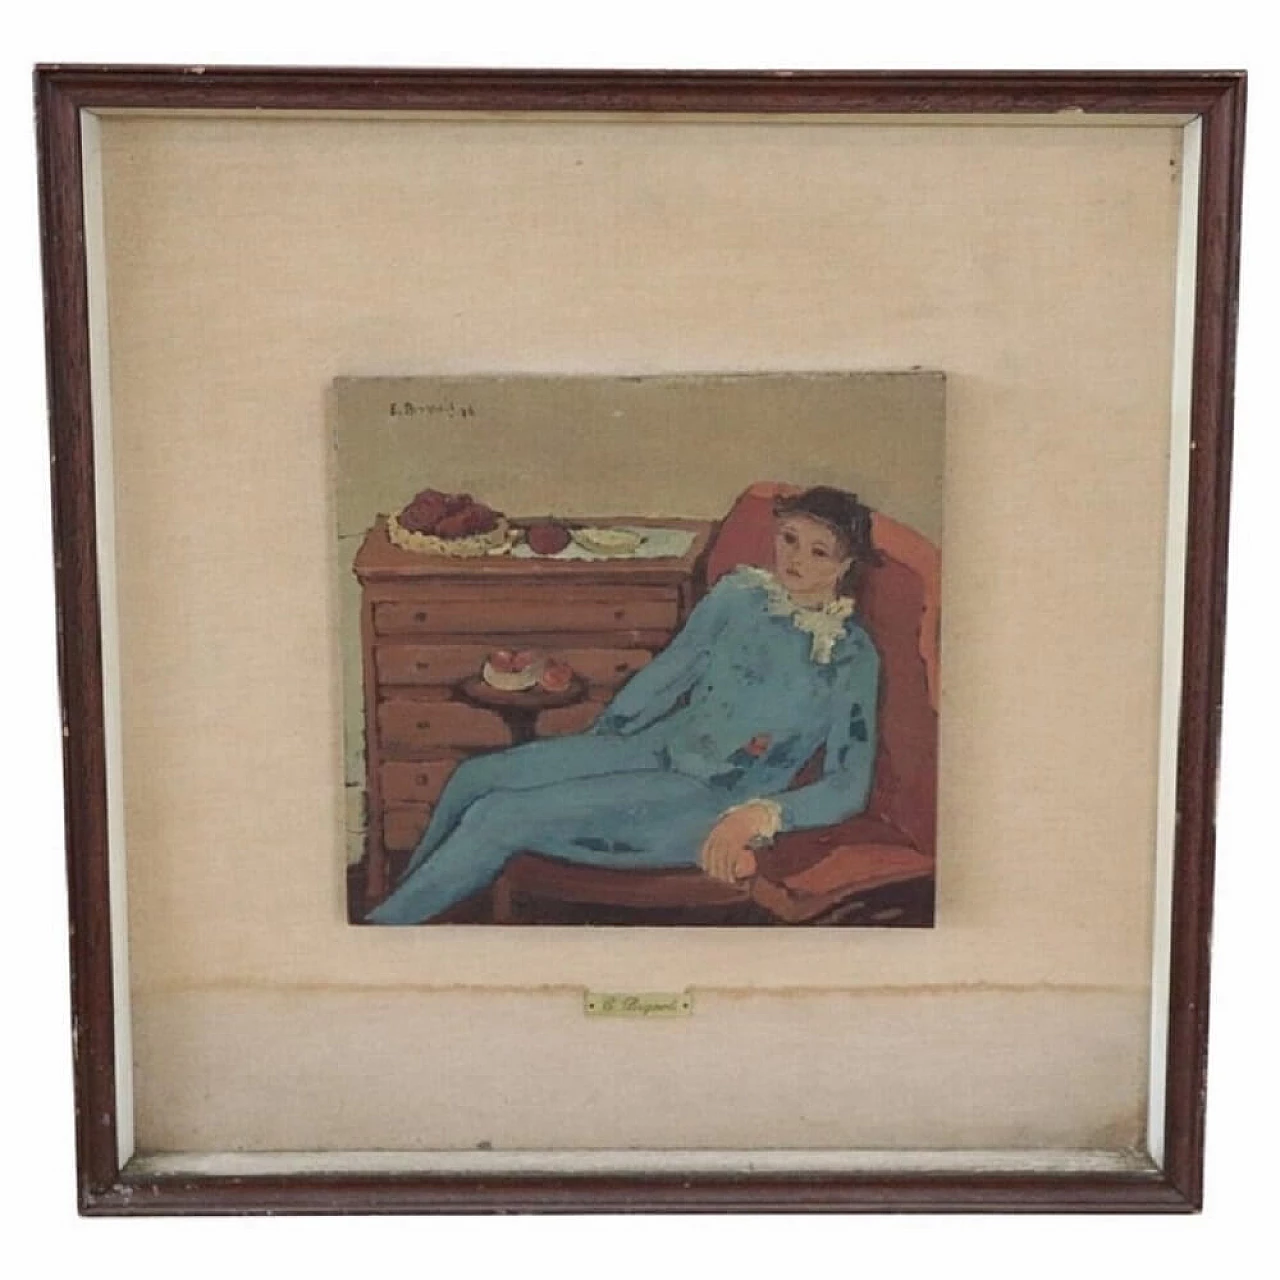 Elda Brignoli, portrait of a seated woman, oil on panel, 1976 1